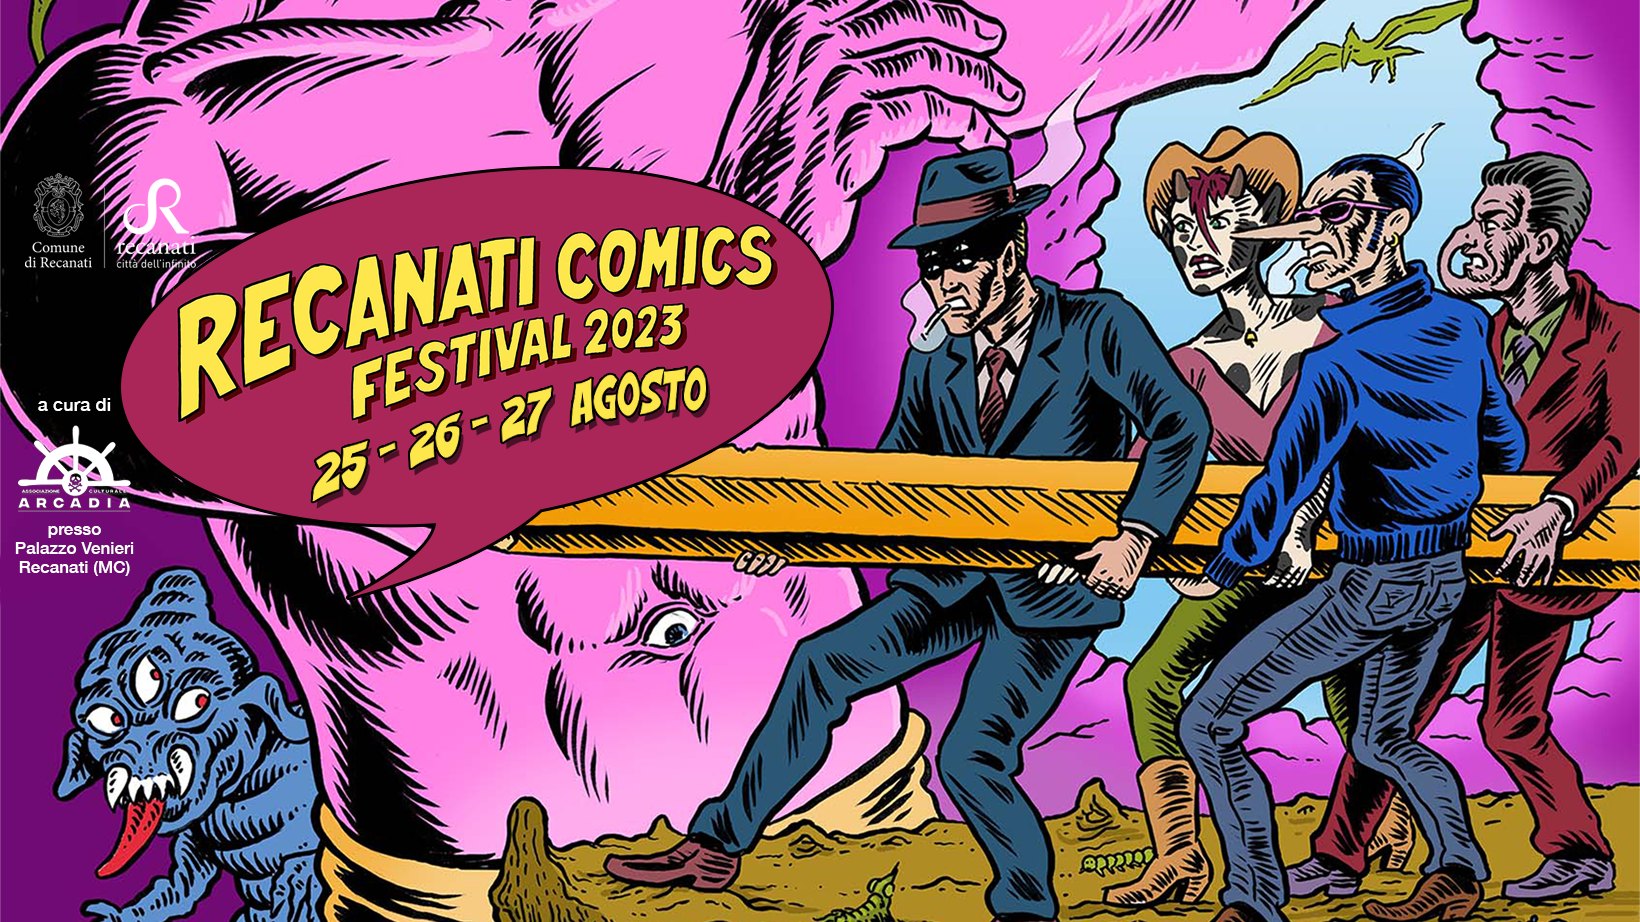 La terza edizione del Recanati Comics Festival: dal 25 al 27 agosto 2023